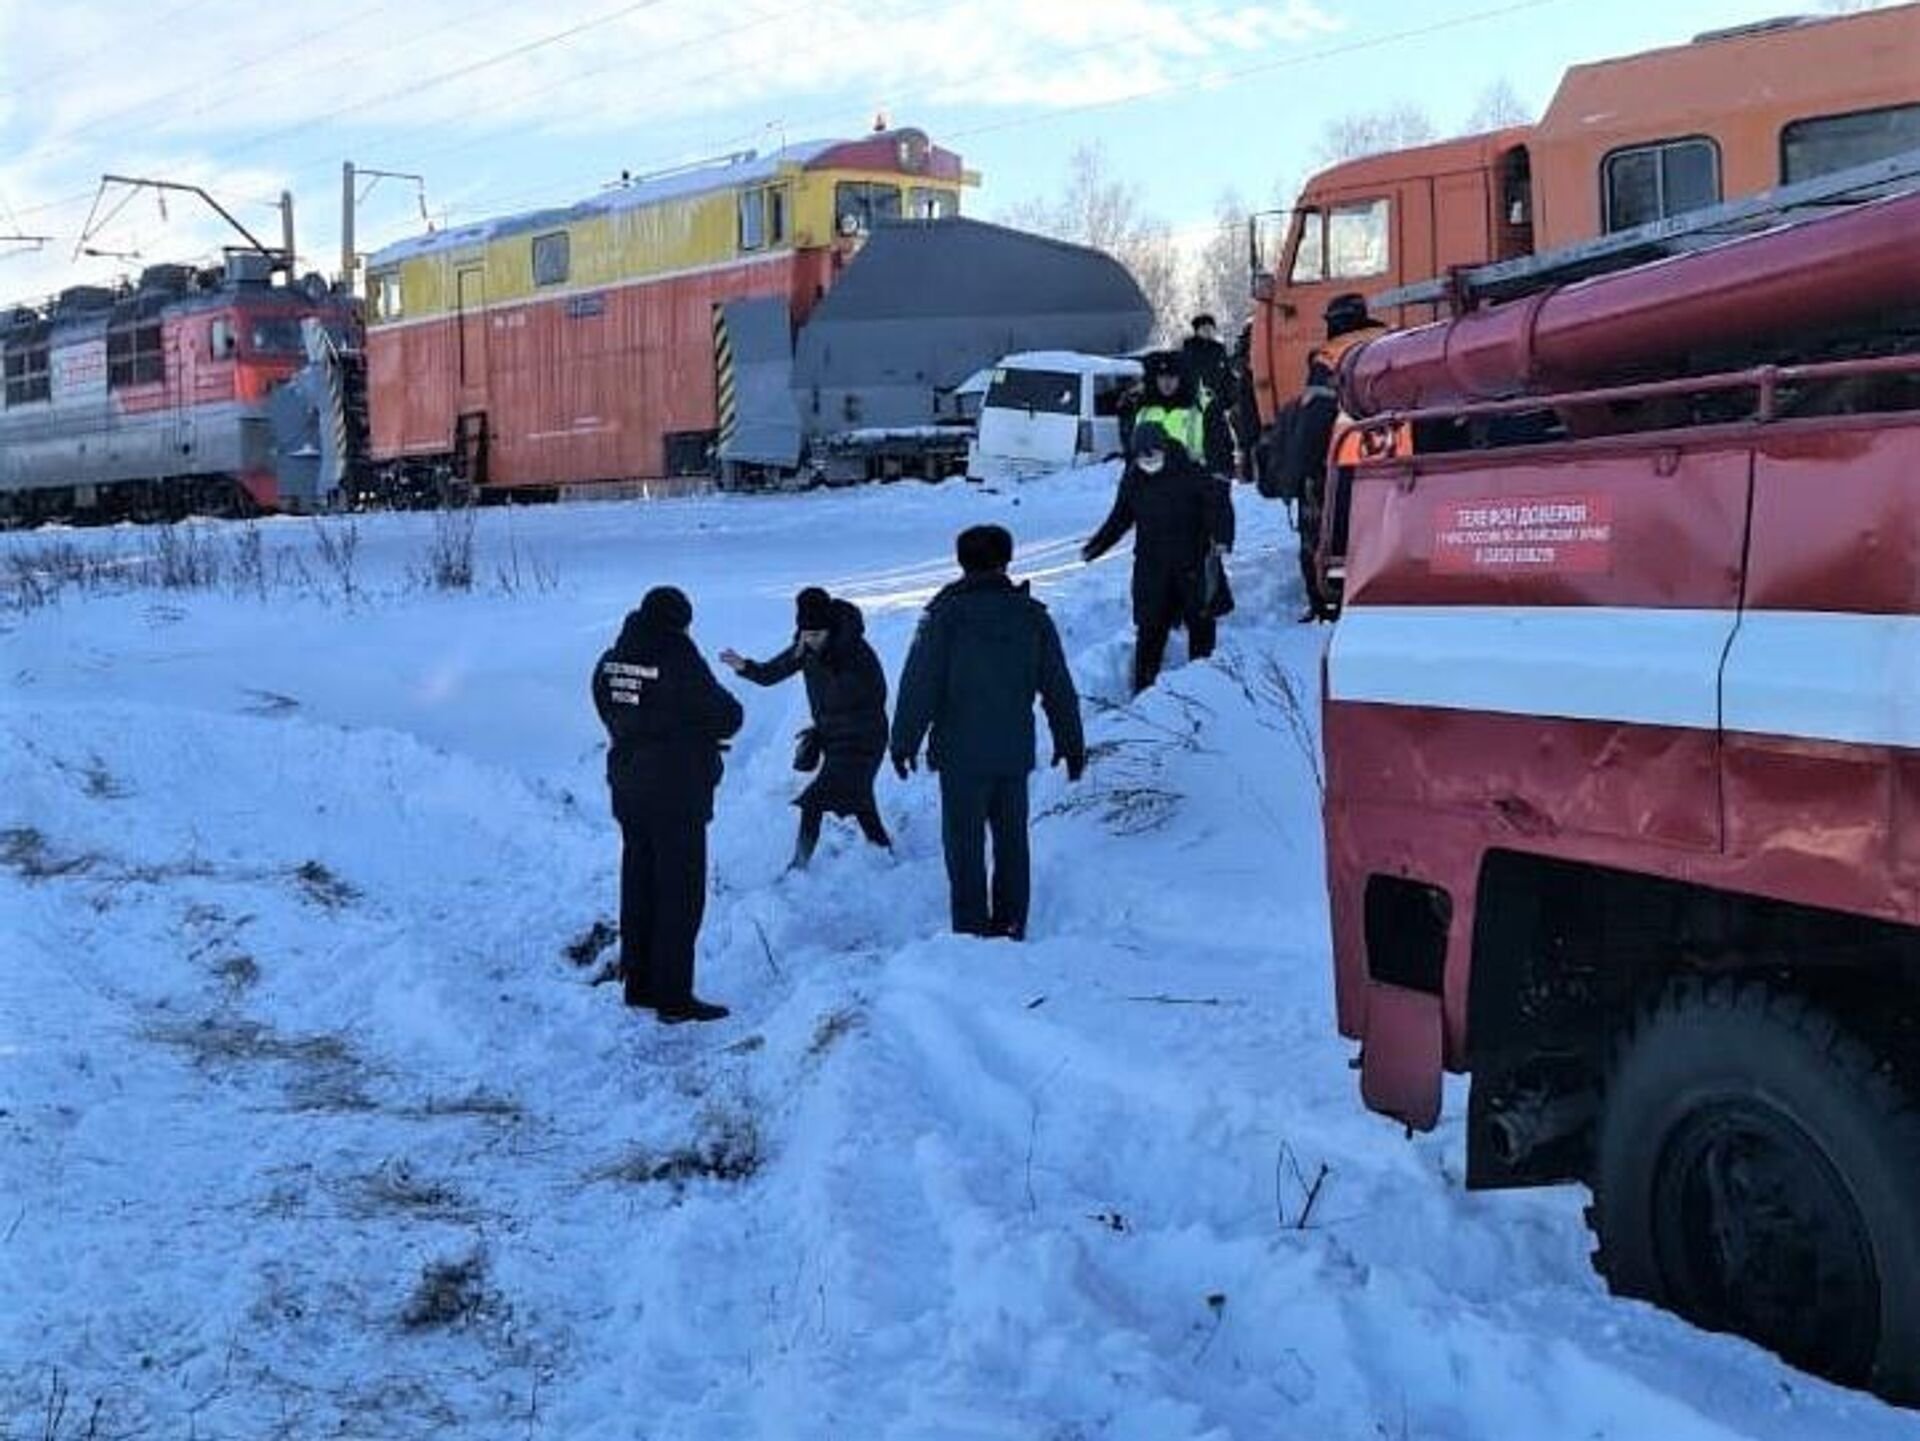 20 29 ноября. Алтай снегоуборочный поезд авария. Происшествия на железной дороге. ДТП В Тальменке Алтайского края.